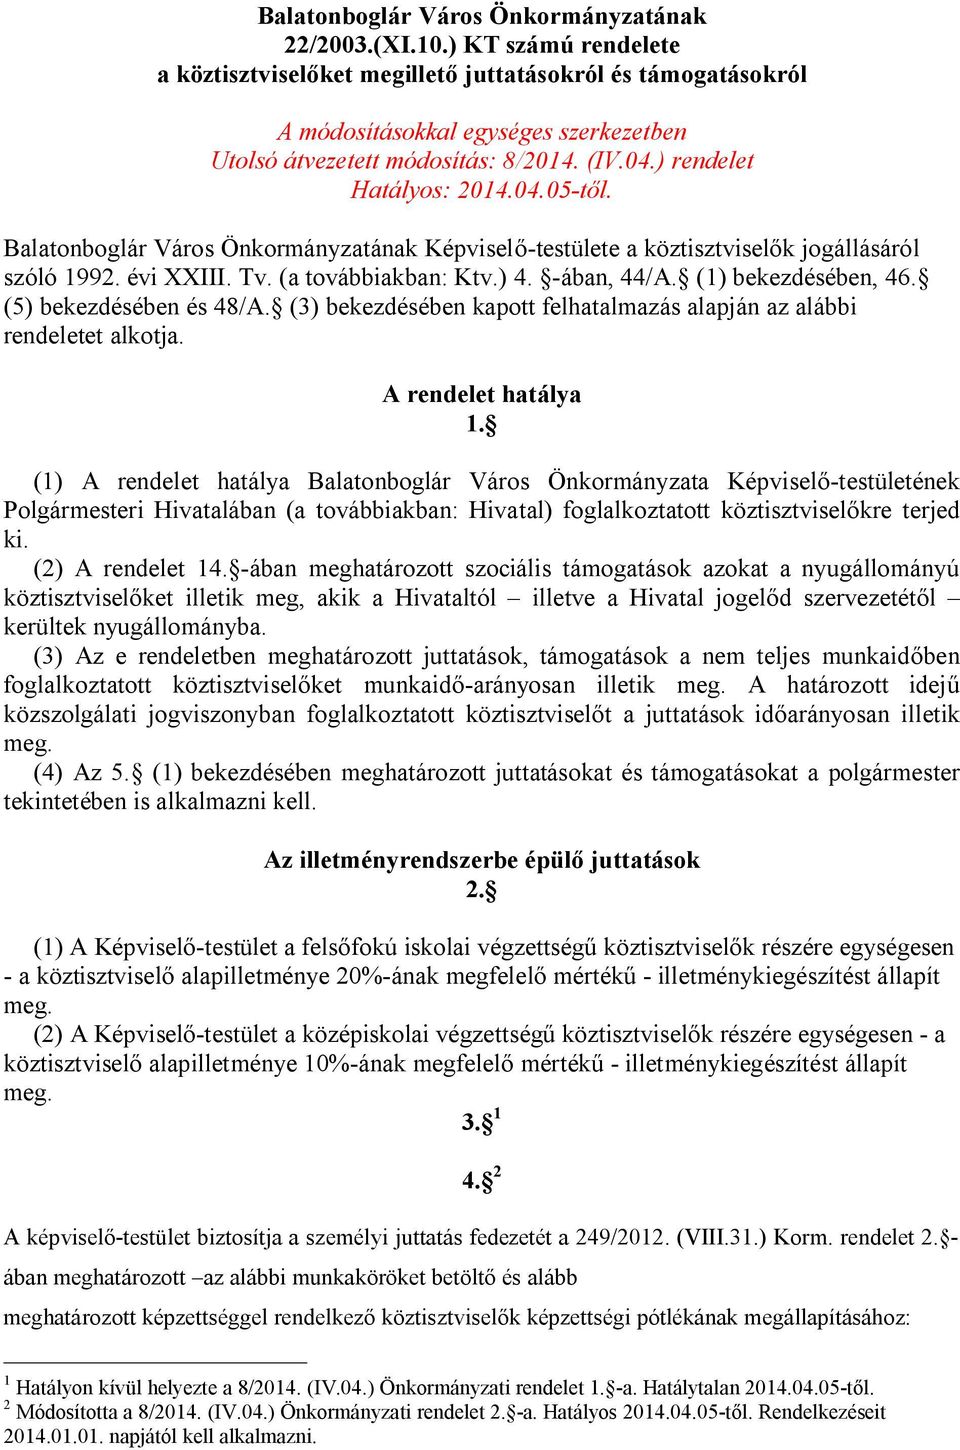 Balatonboglár Város Önkormányzatának Képviselő-testülete a köztisztviselők jogállásáról szóló 1992. évi XXIII. Tv. (a továbbiakban: Ktv.) 4. -ában, 44/A. (1) bekezdésében, 46.